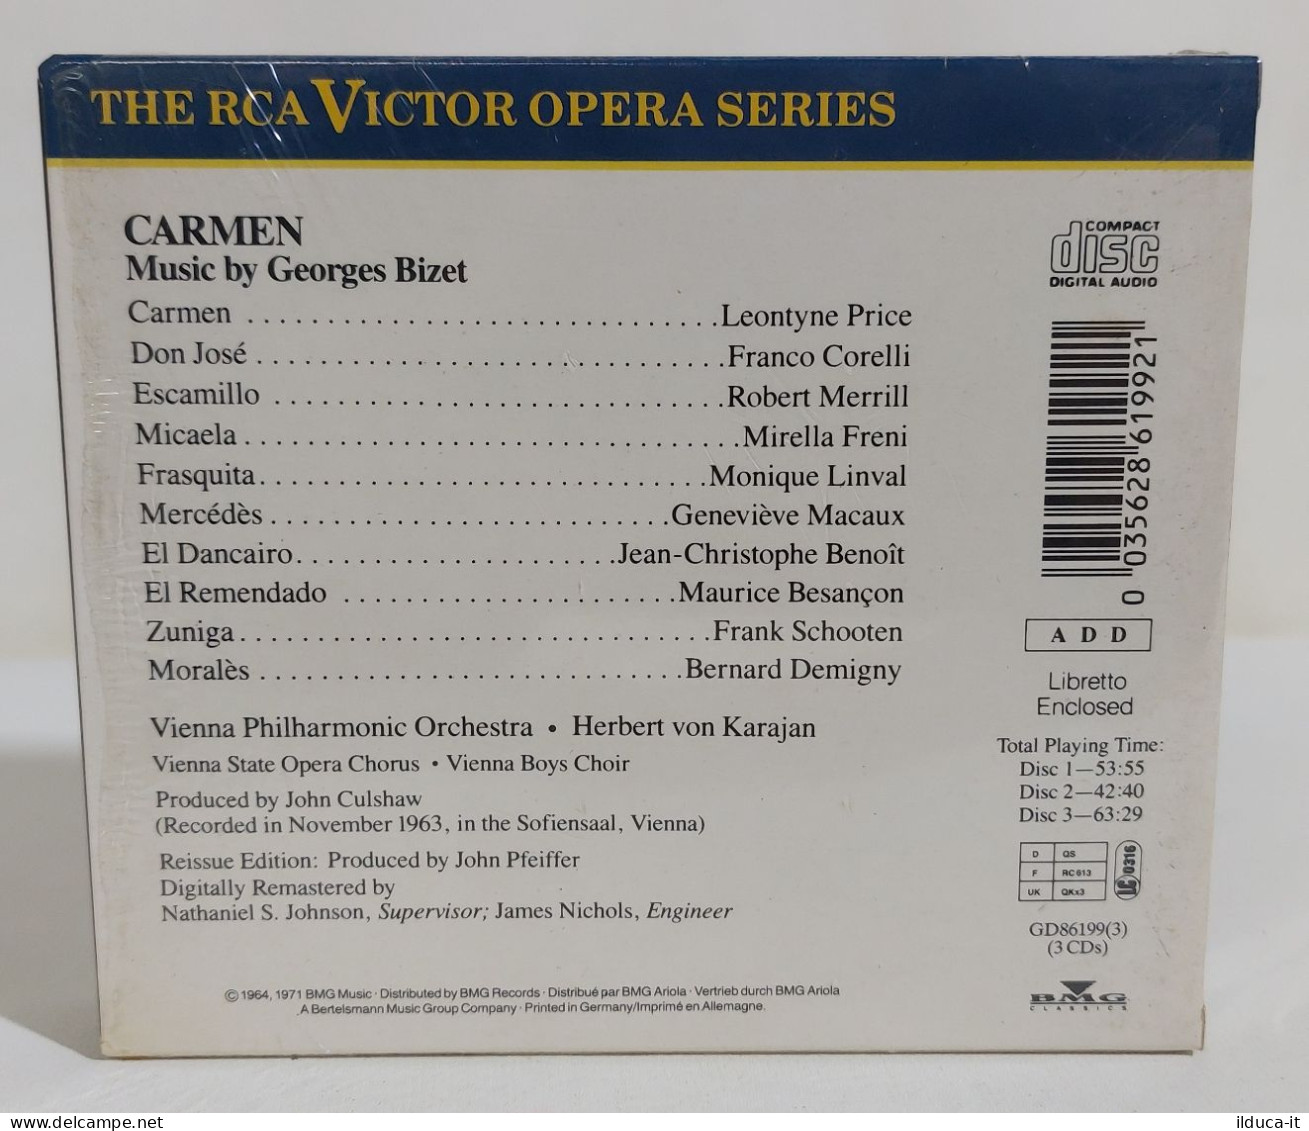 33494 Cofanetto 3 CD - Bizet - Carmen - RCA Victor 1988 - Oper & Operette